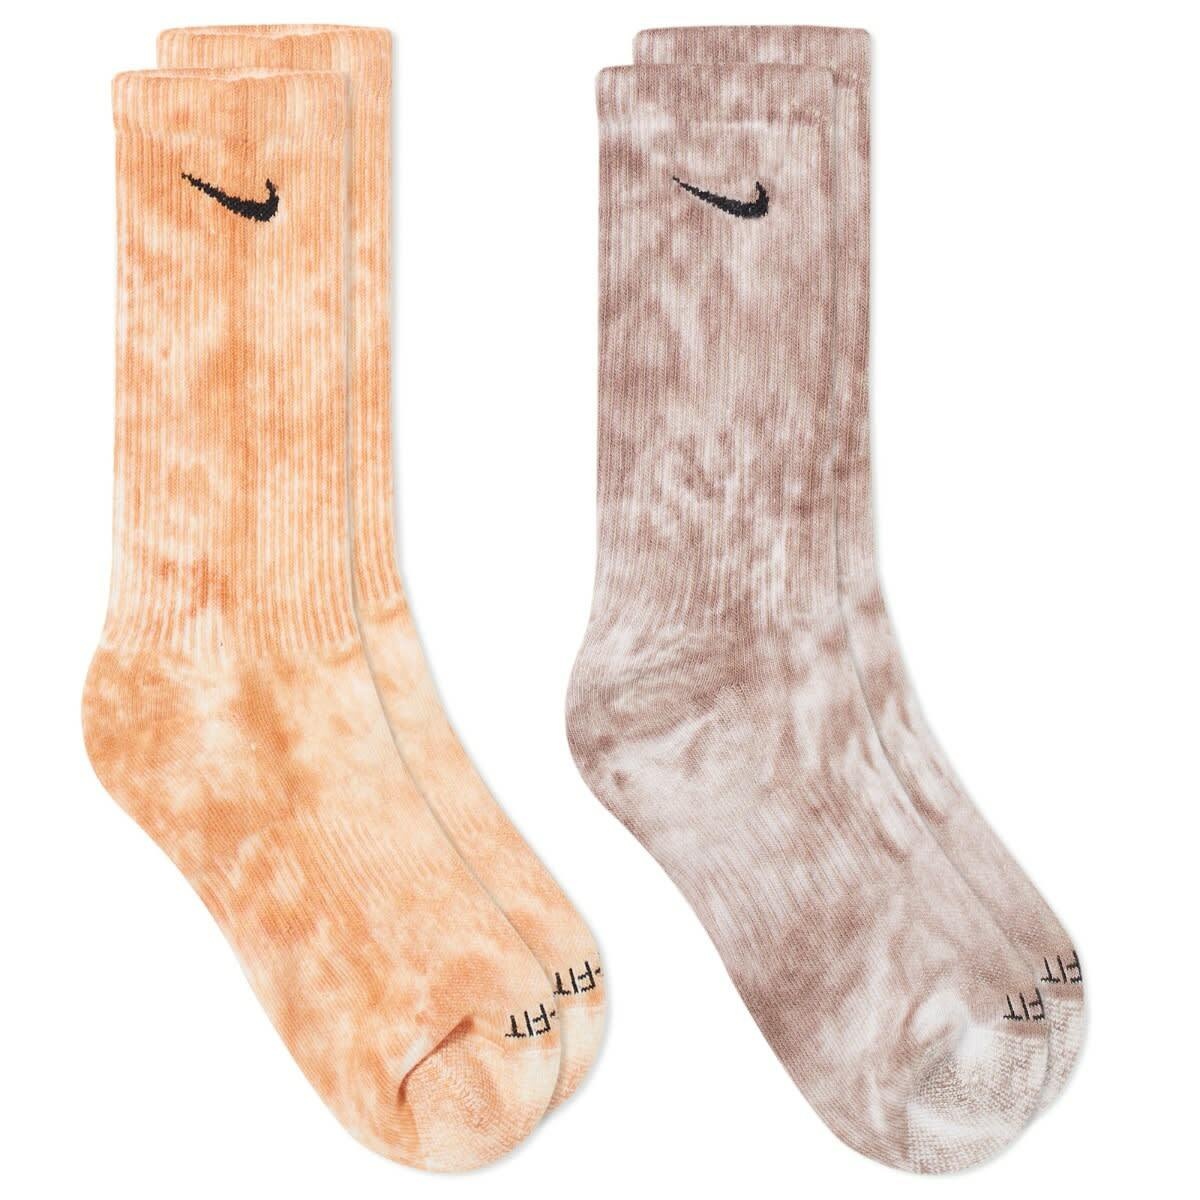 Nike Tie-Dye Sock - 2 Pack in Multi Nike